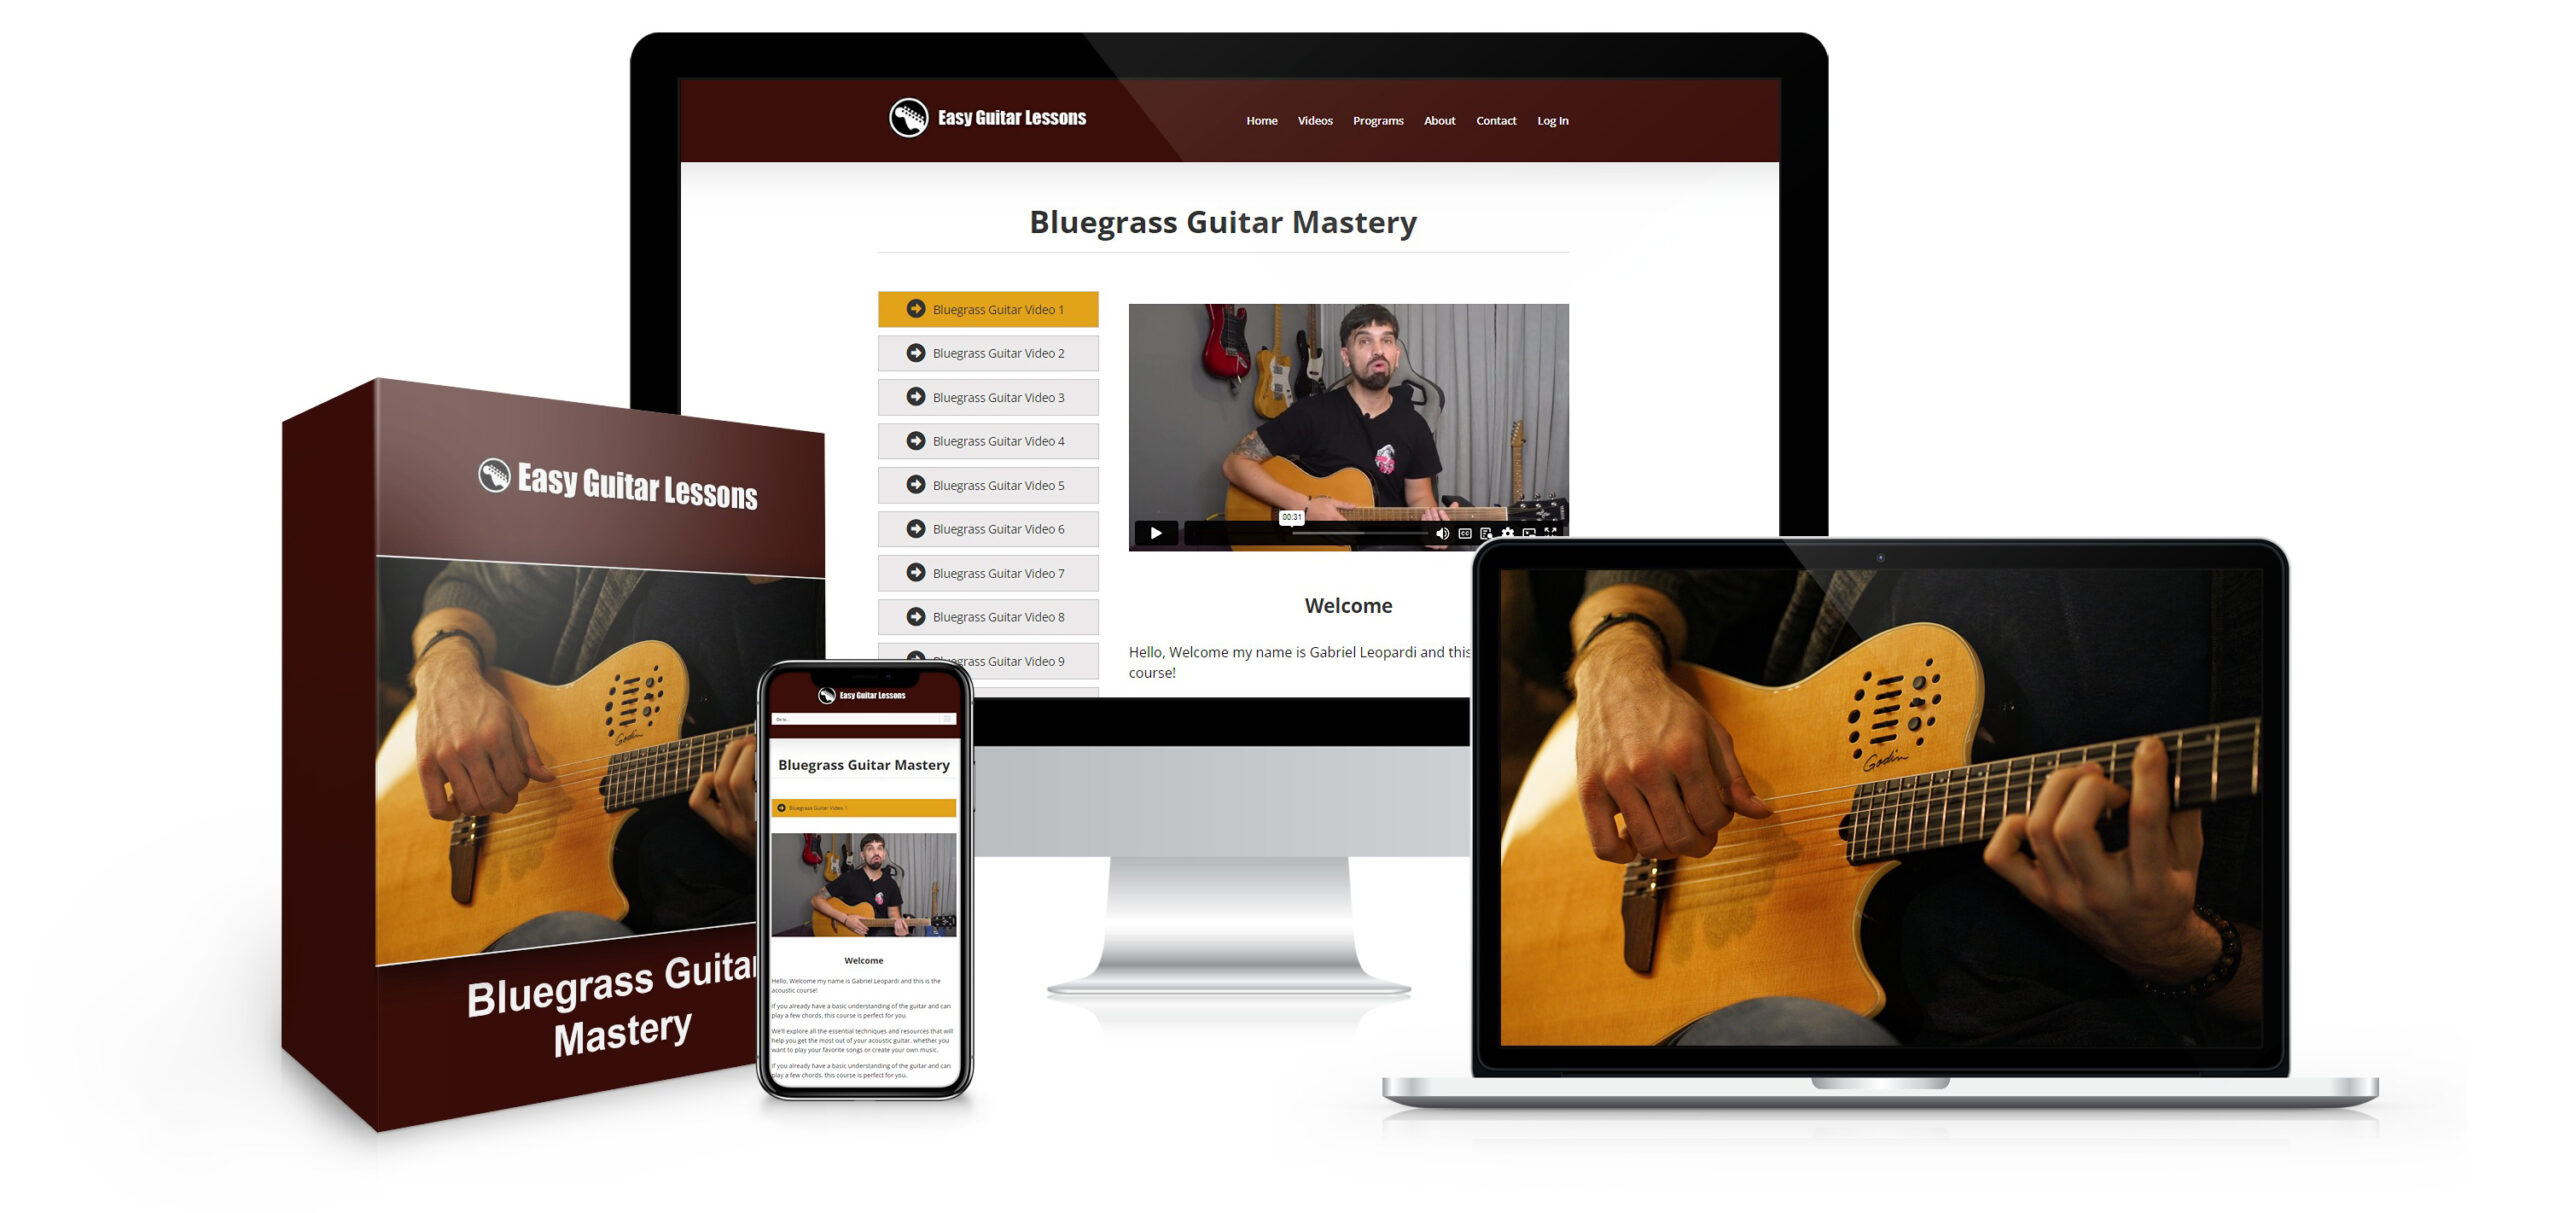 Bluegrass Guitar Mastery